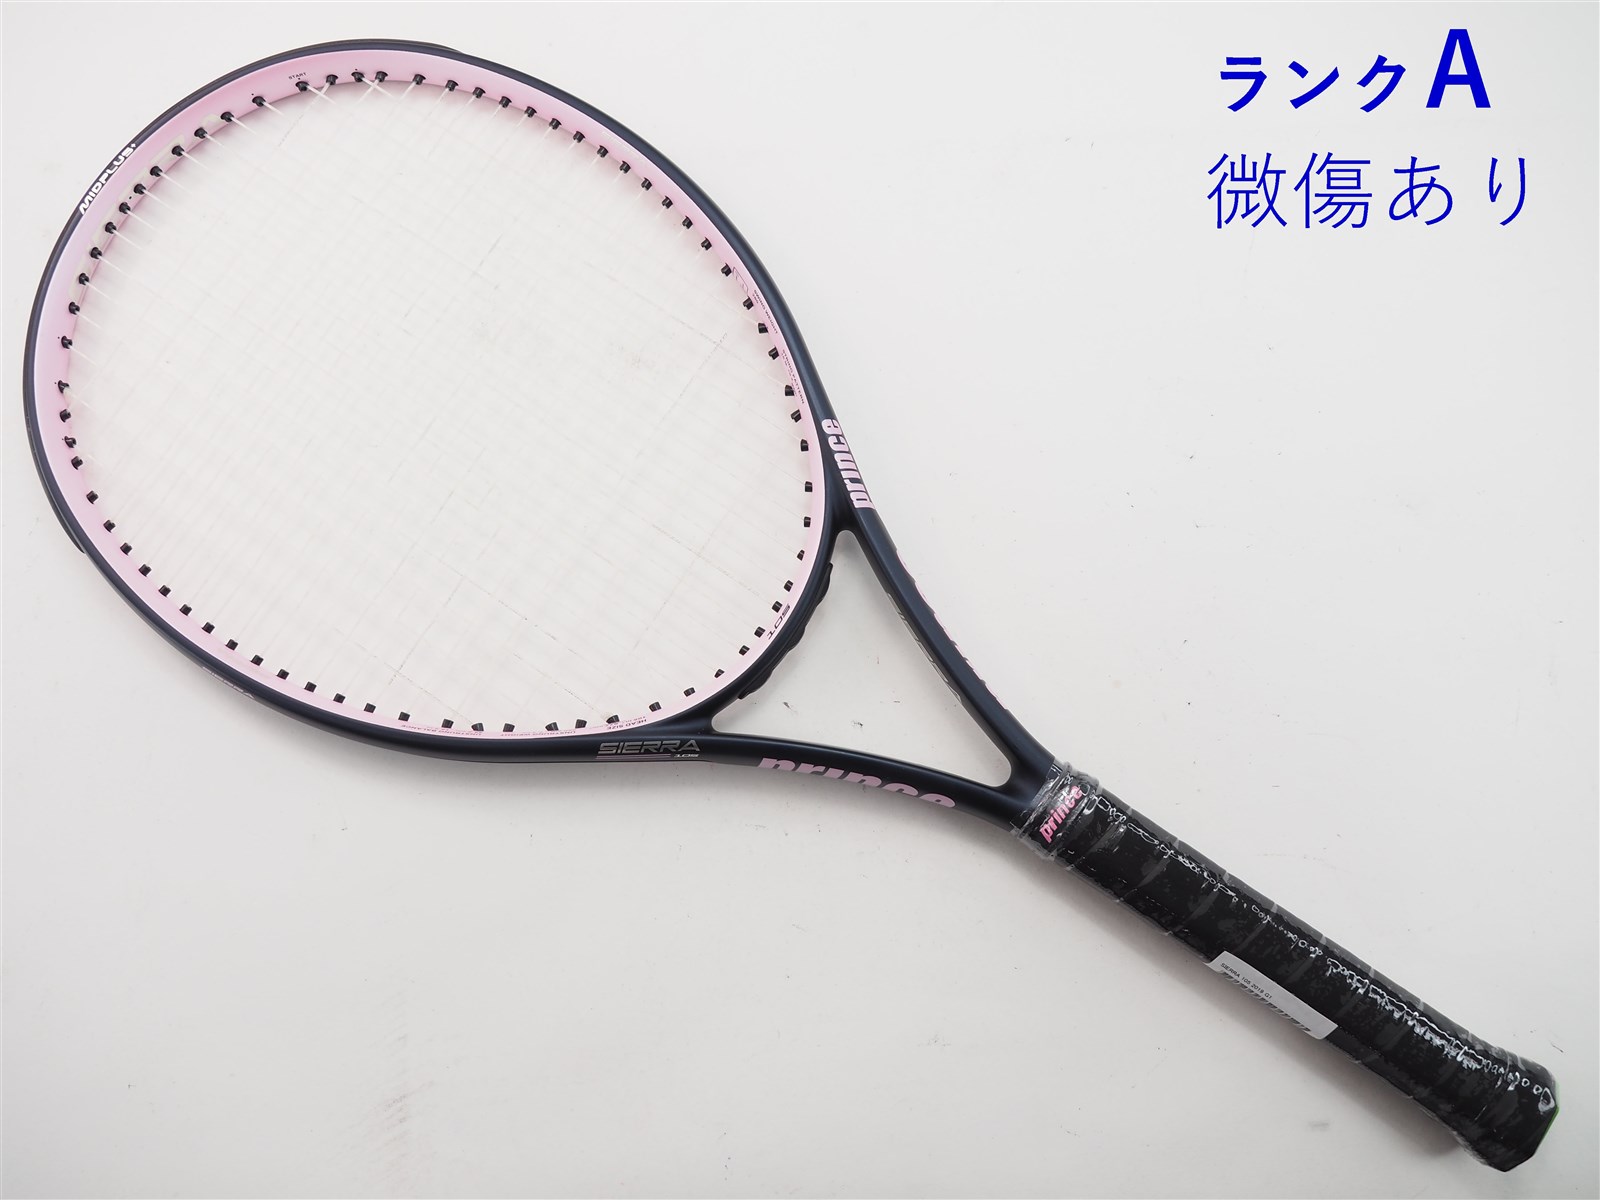 ☆最終値下げ☆ prince 硬式テニスラケット